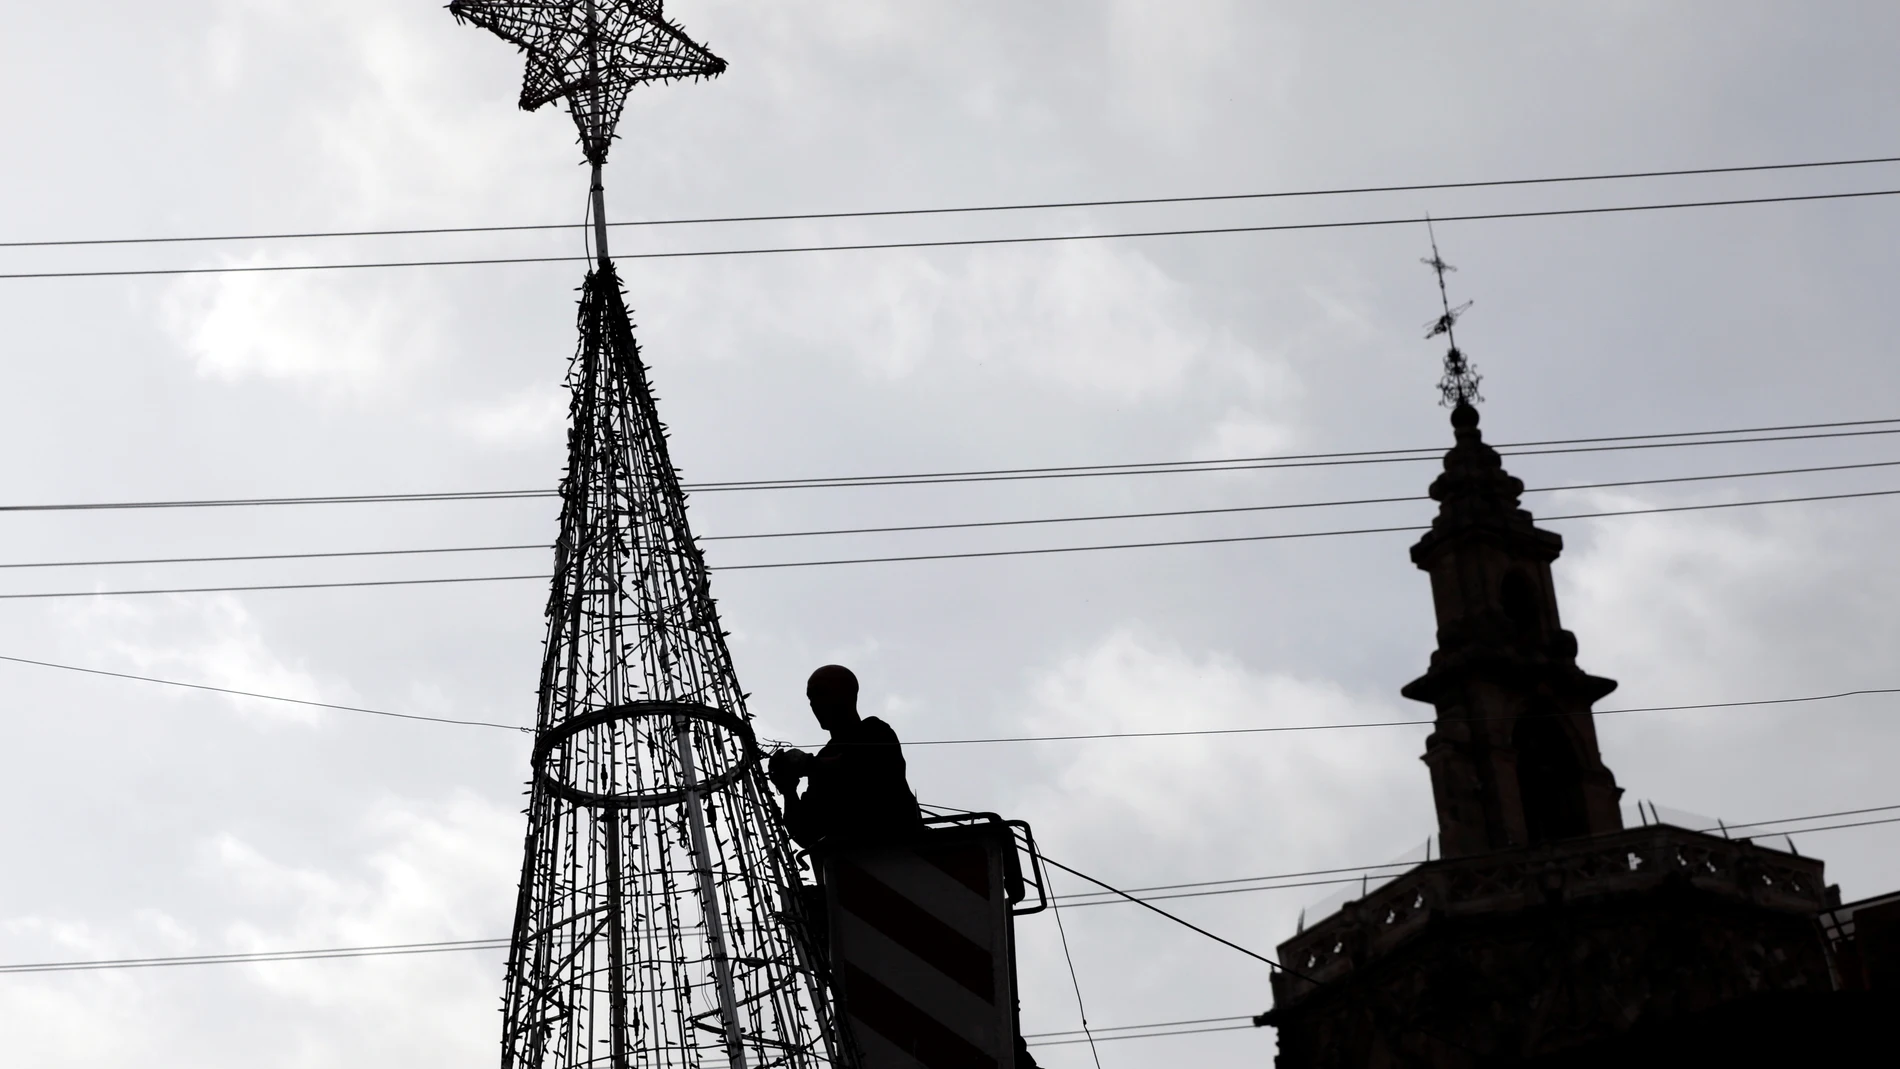 Un operario trabaja en un árbol de luces navideño en el casco antiguo de la ciudad en la que se respira ya el ambiente navideño